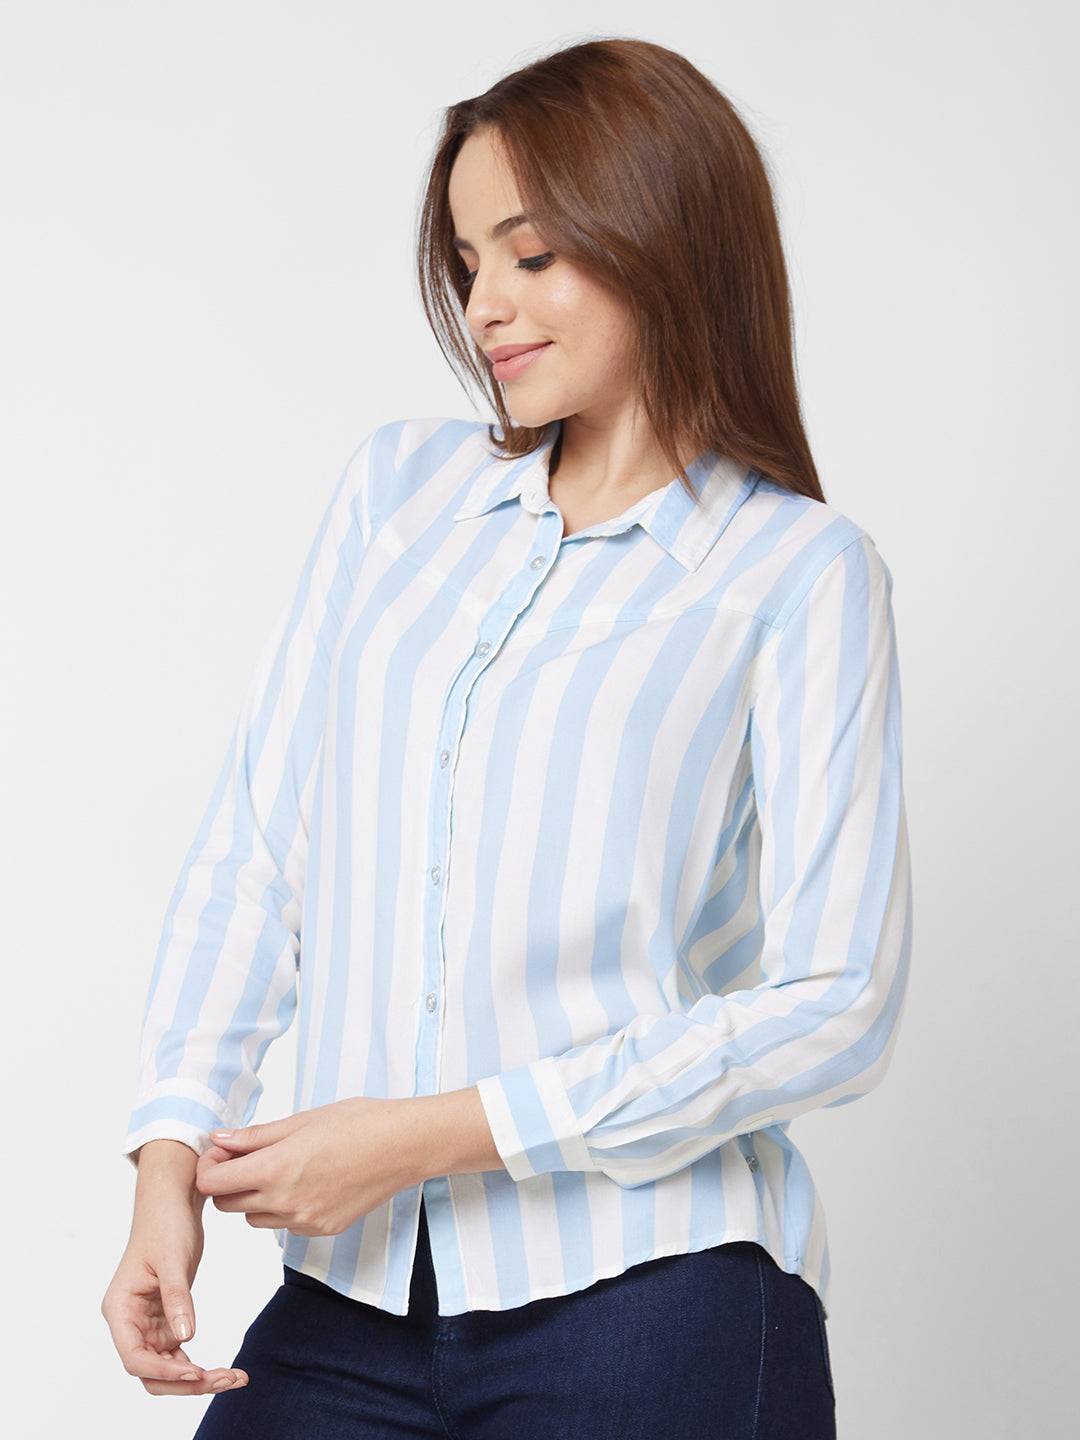 Spykar Full Sleeve Striped Blue Shirt For Women